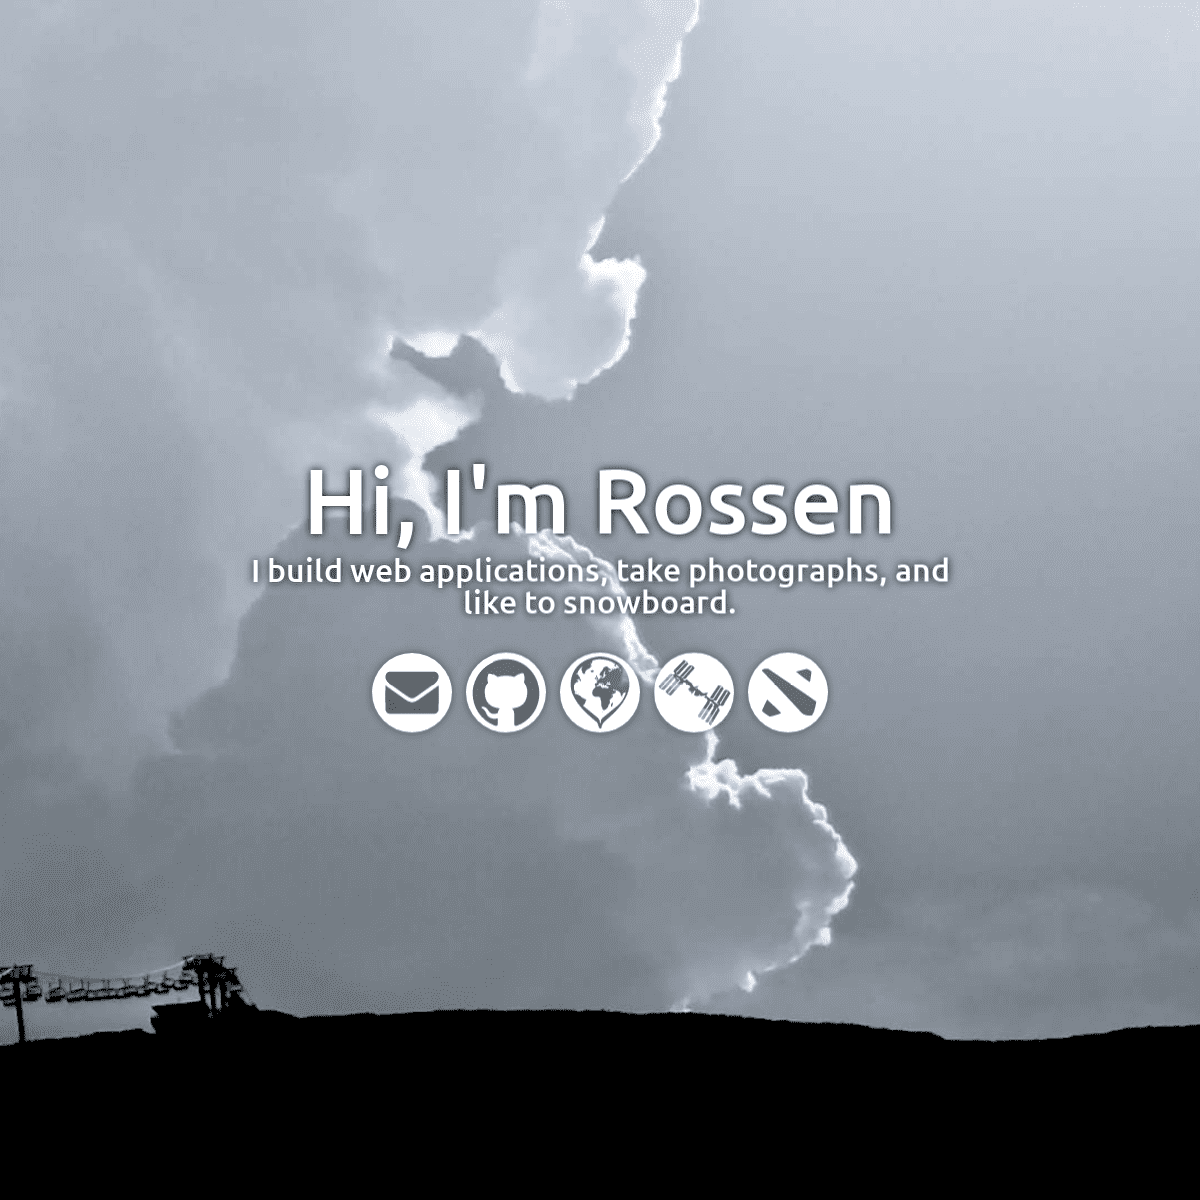 Hi, I'm Rossen